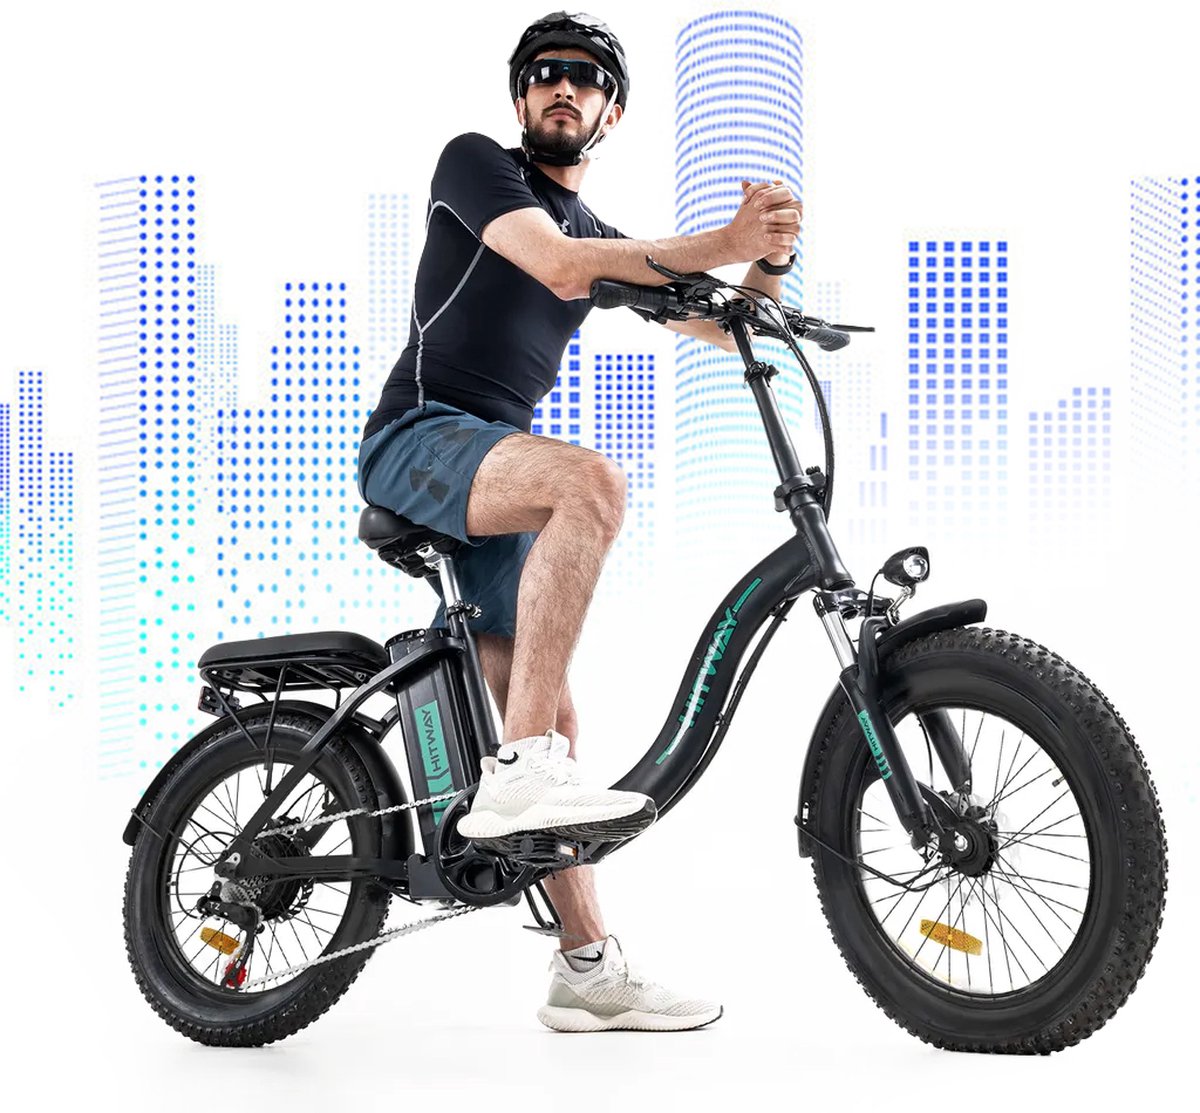 HITWAY E-Bike Elektrische Fiets 20 Inch Fat Tire E-Bicycle Vouwfiets, 250 W/36 V/11,2 Ah Accu, Max. Bereik tot 35-90 km, offroad-mountainbike met Shimano 7-versnellingen, City EBike met slot